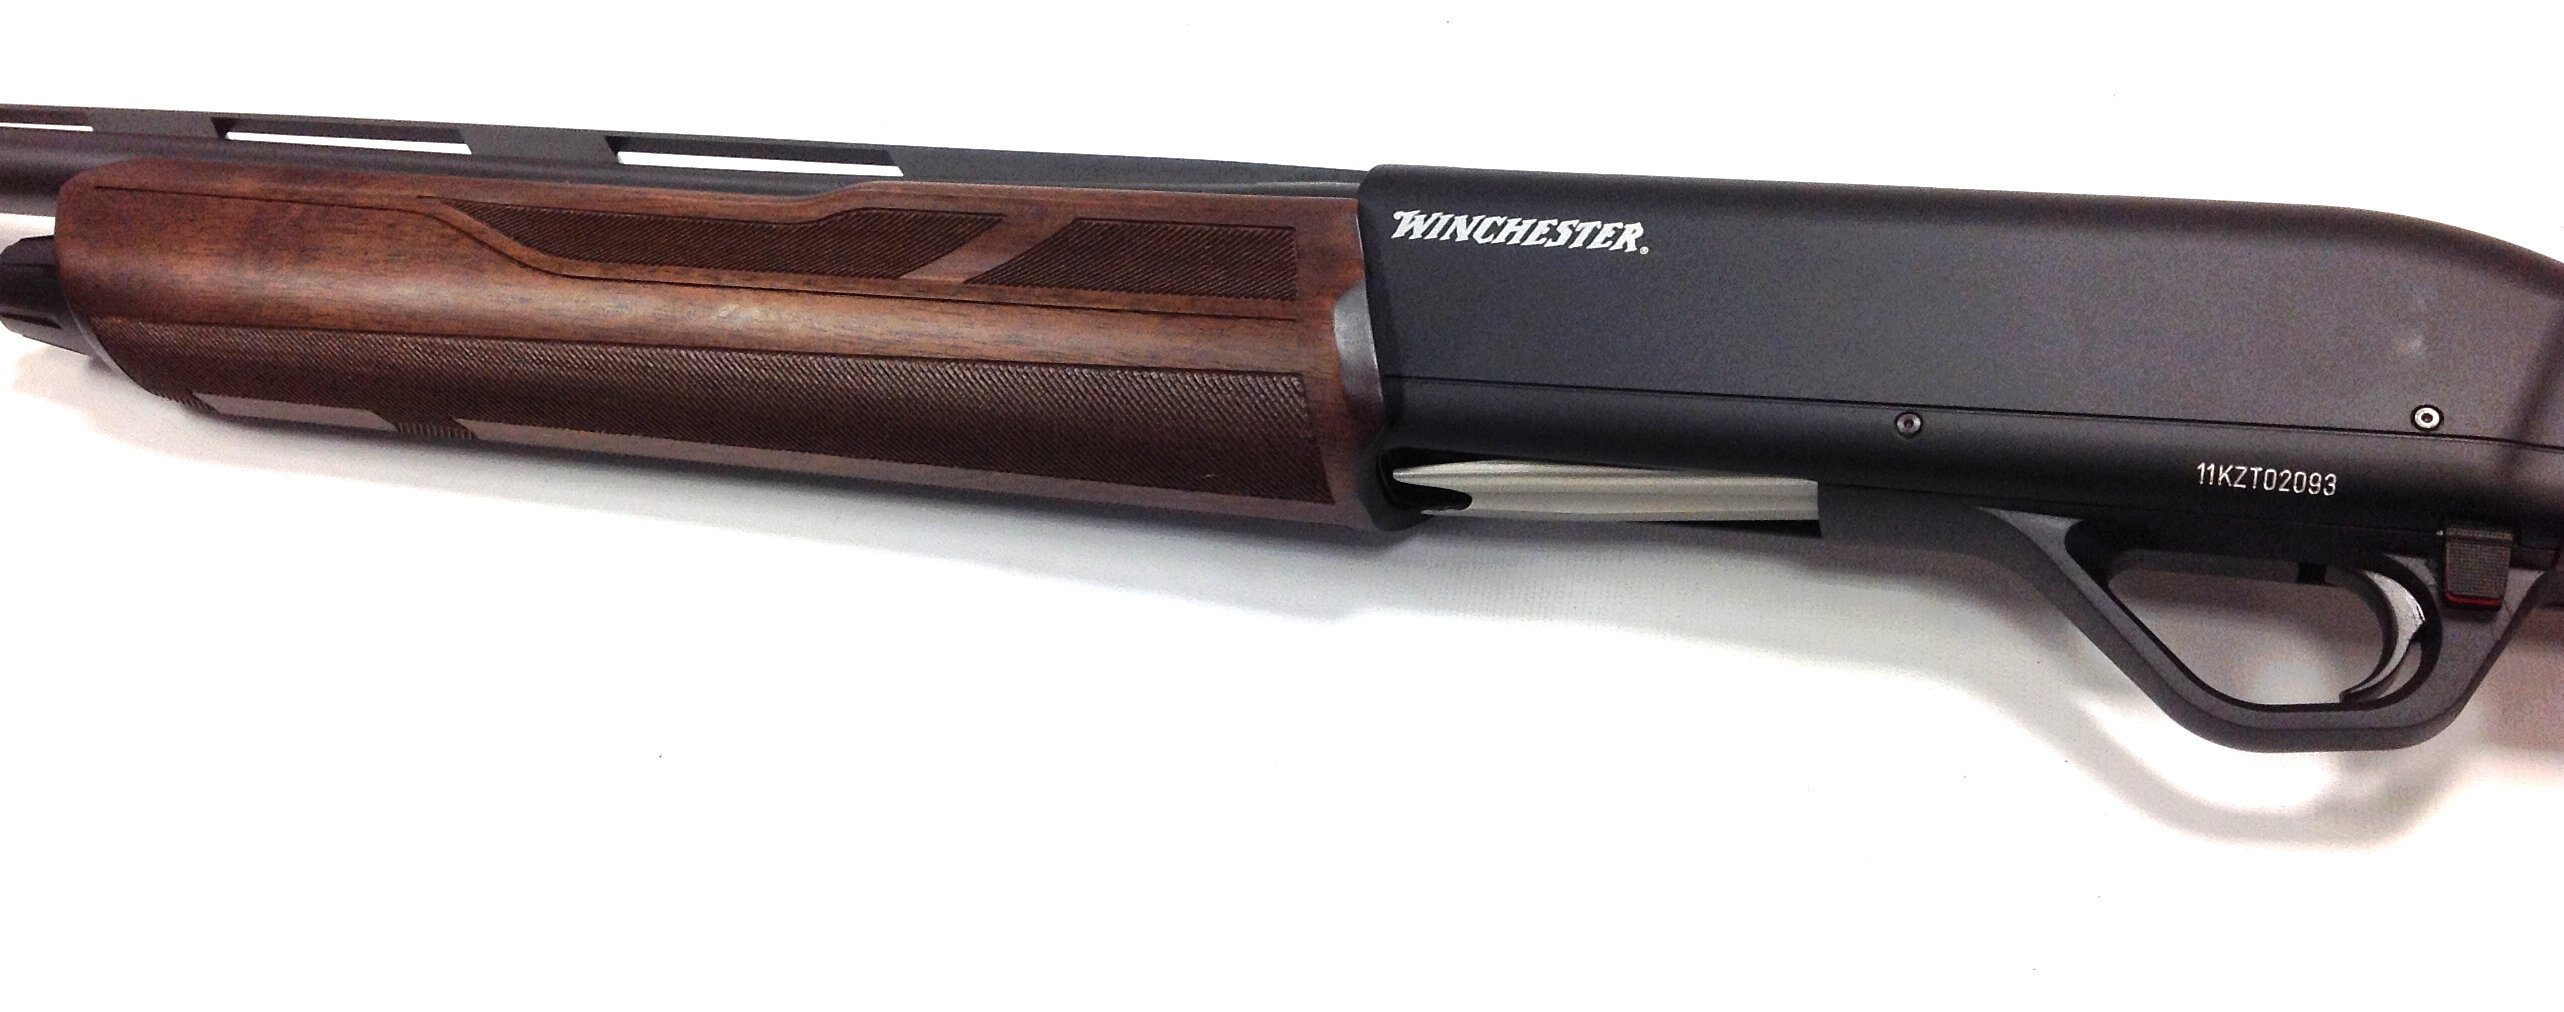 Winchester sx4 shotguns for sale UK